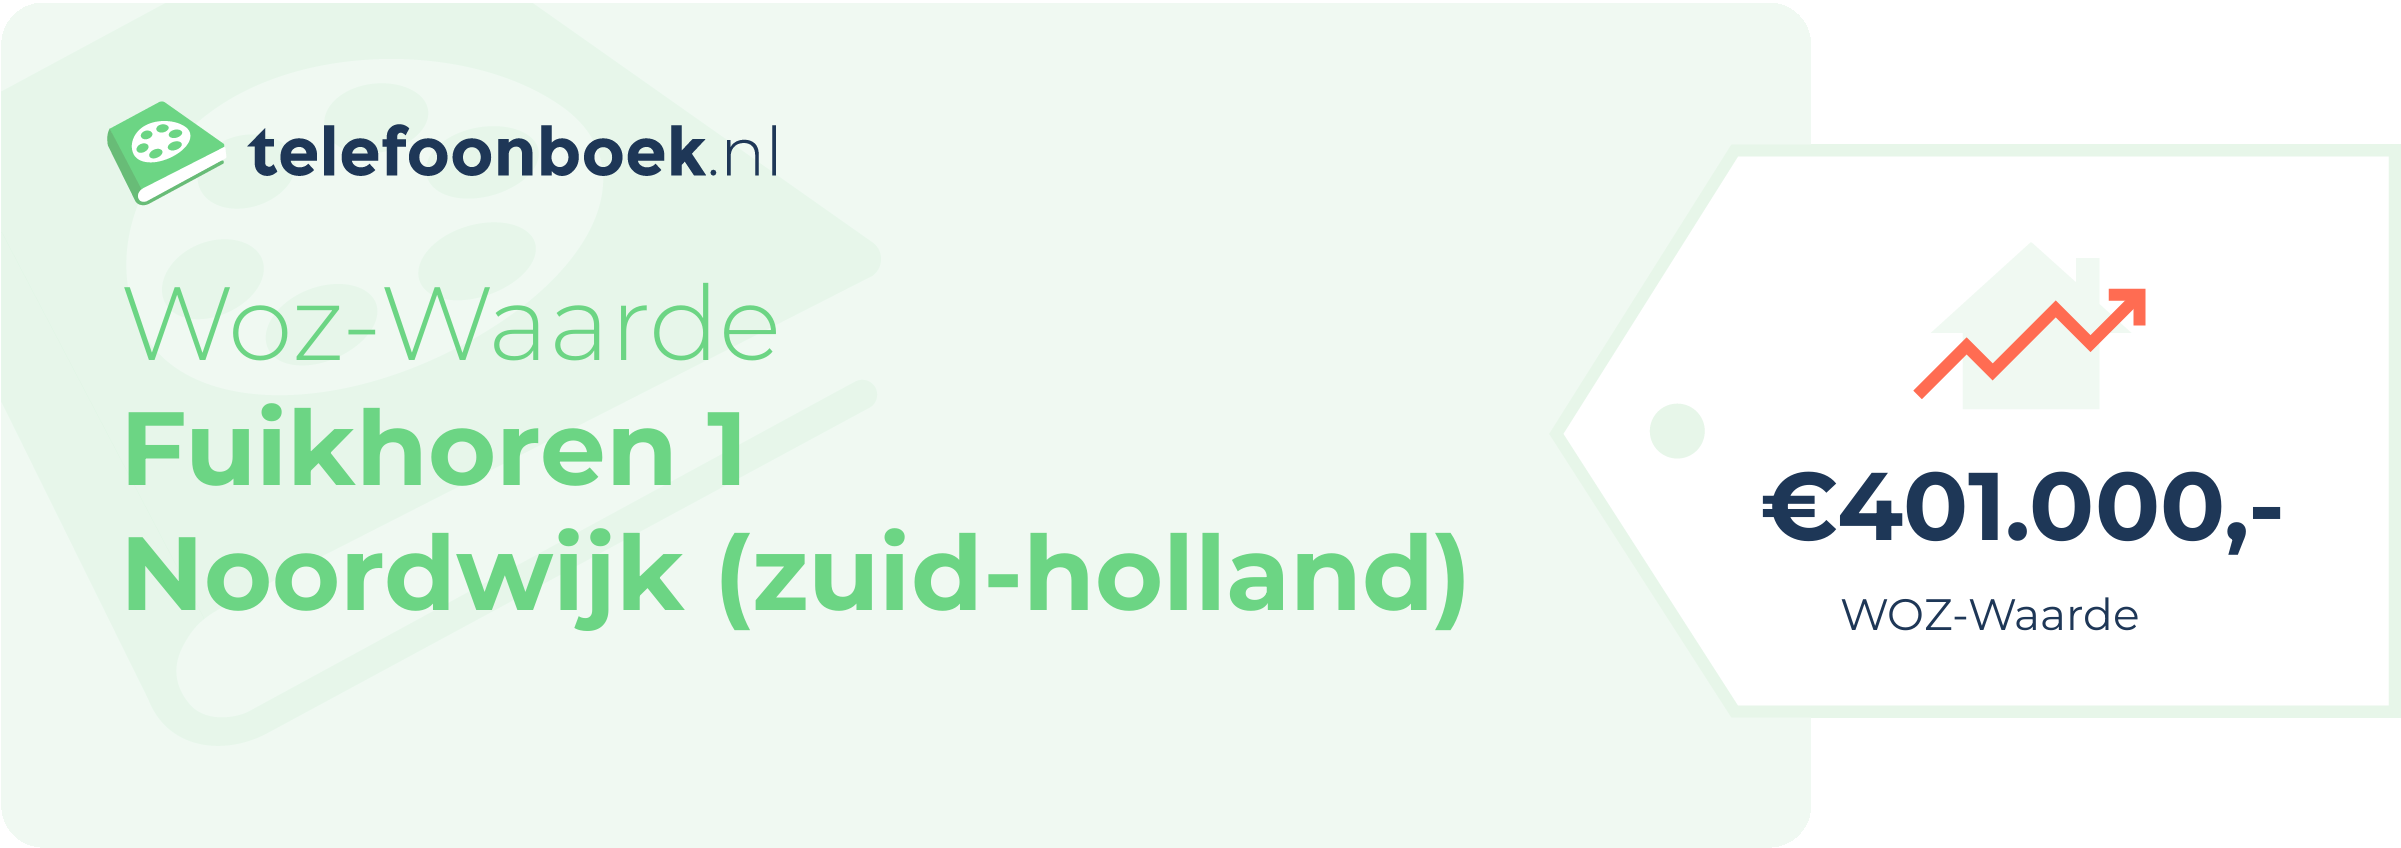 WOZ-waarde Fuikhoren 1 Noordwijk (Zuid-Holland)